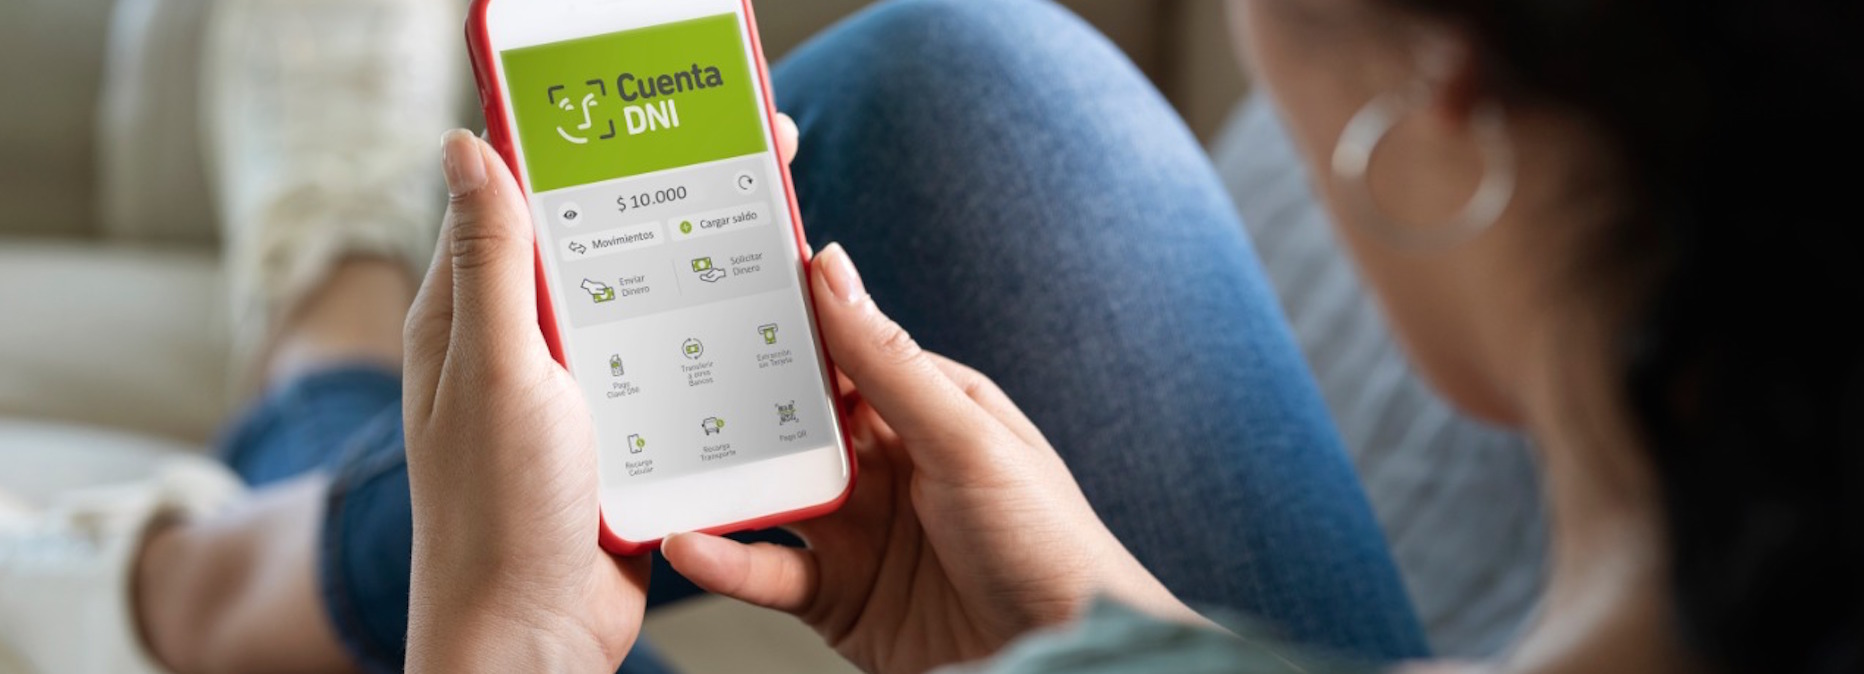 Cuenta DNI es la app favorita entre los millennials